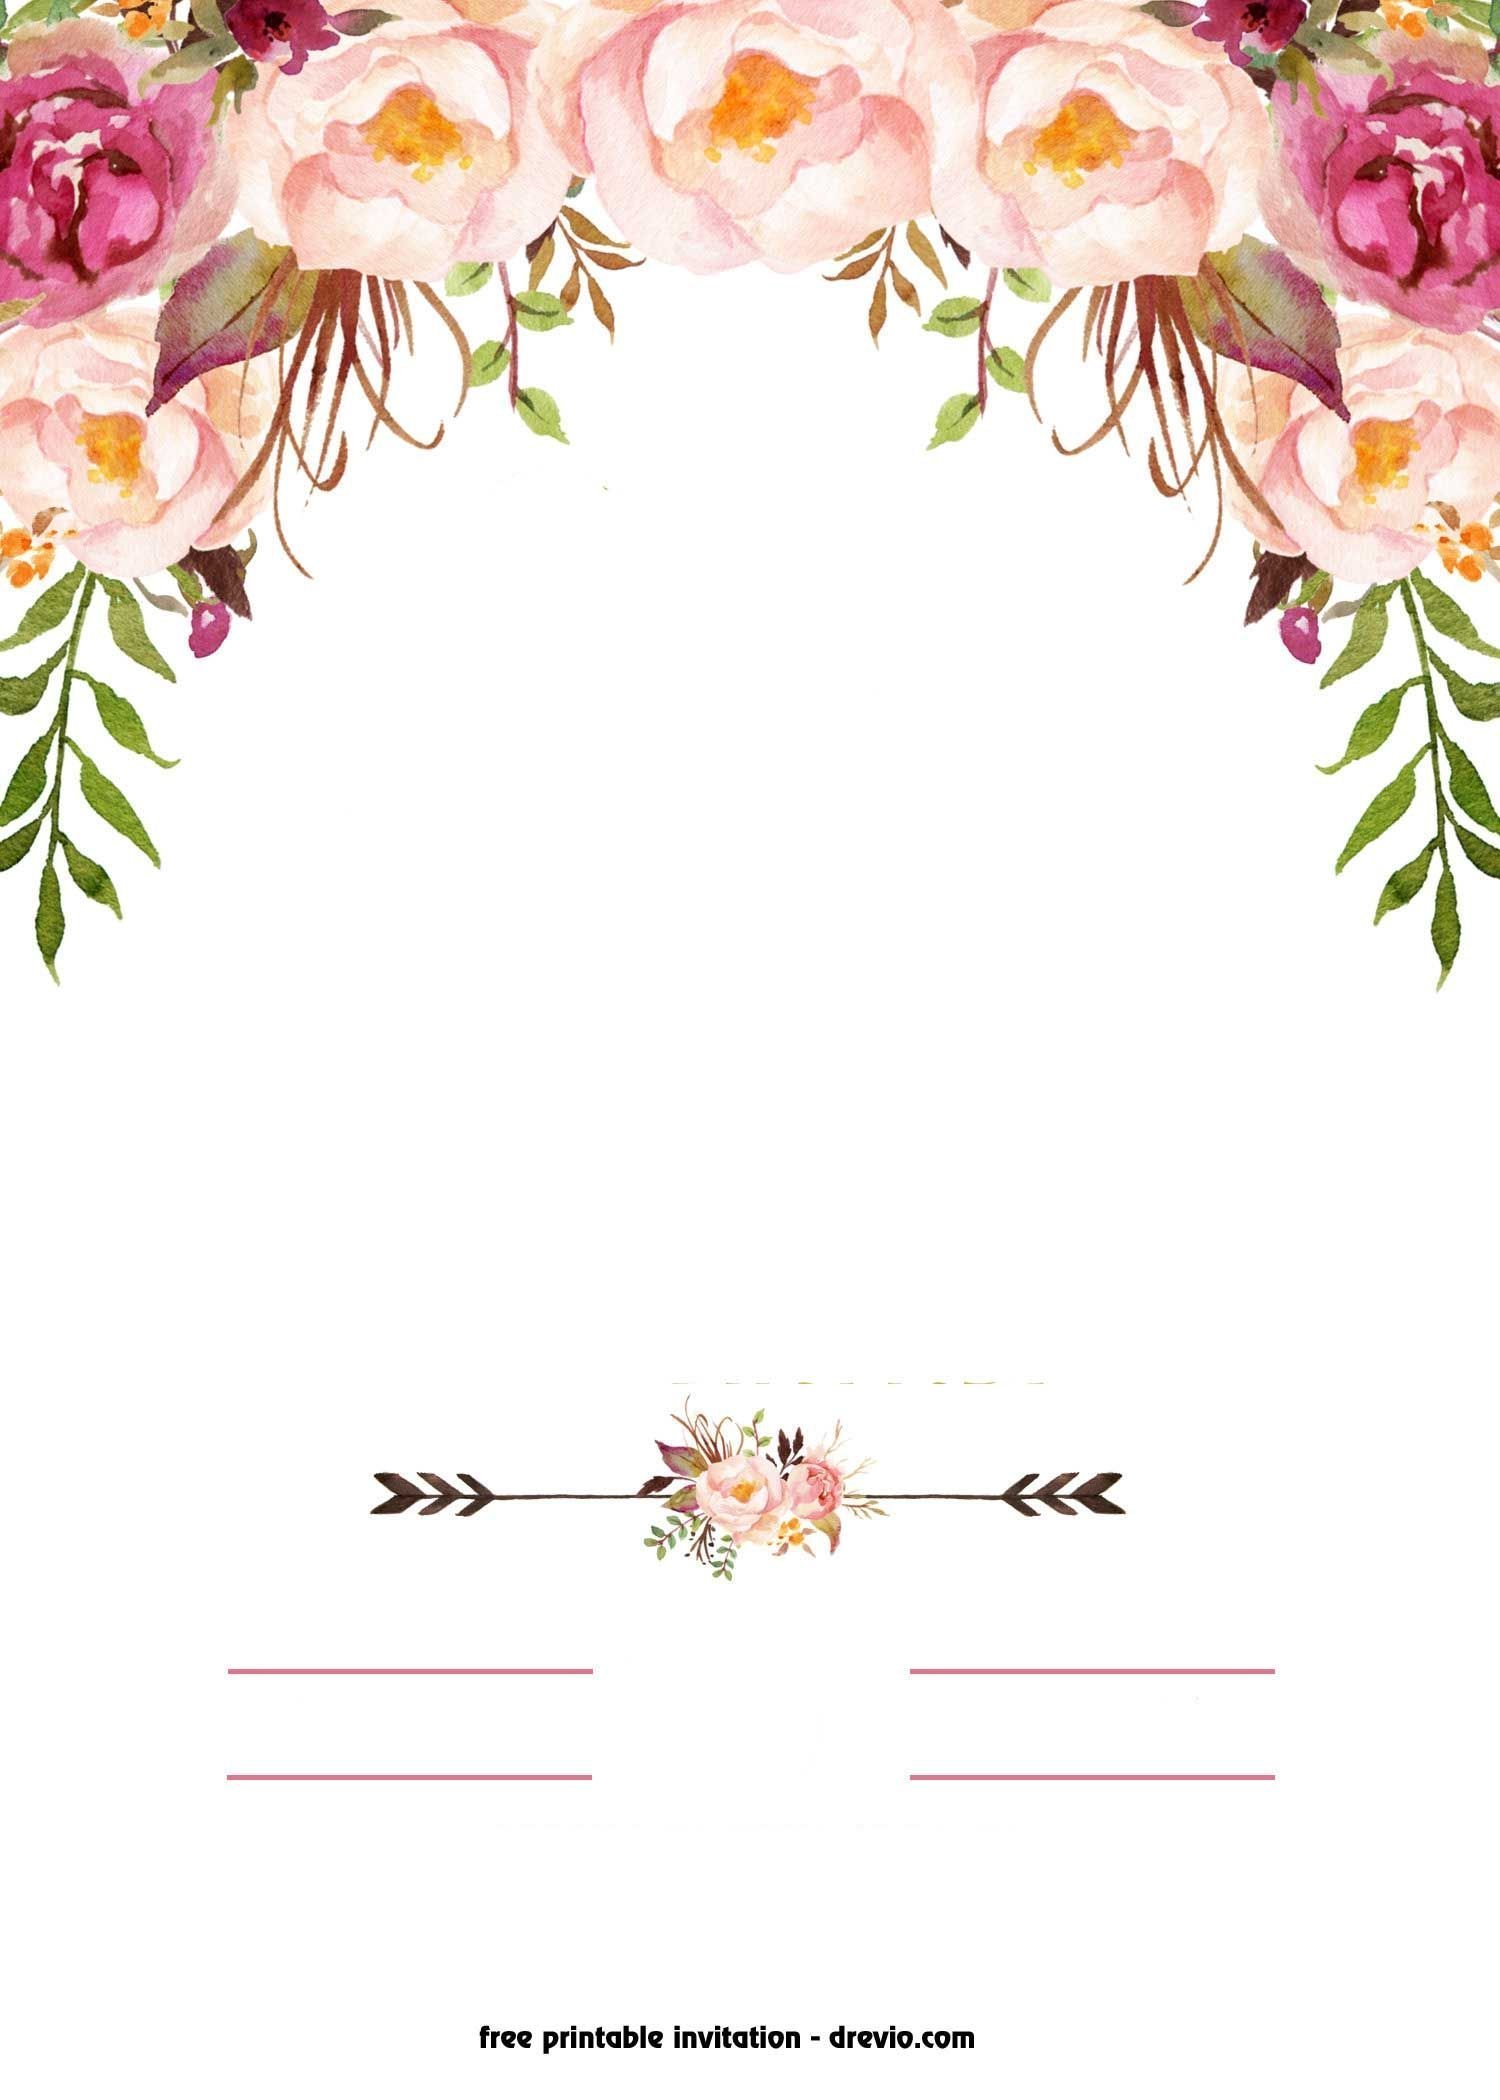 Пригласительные на свадьбу: шаблоны для фотошопа онлайн бесплатно